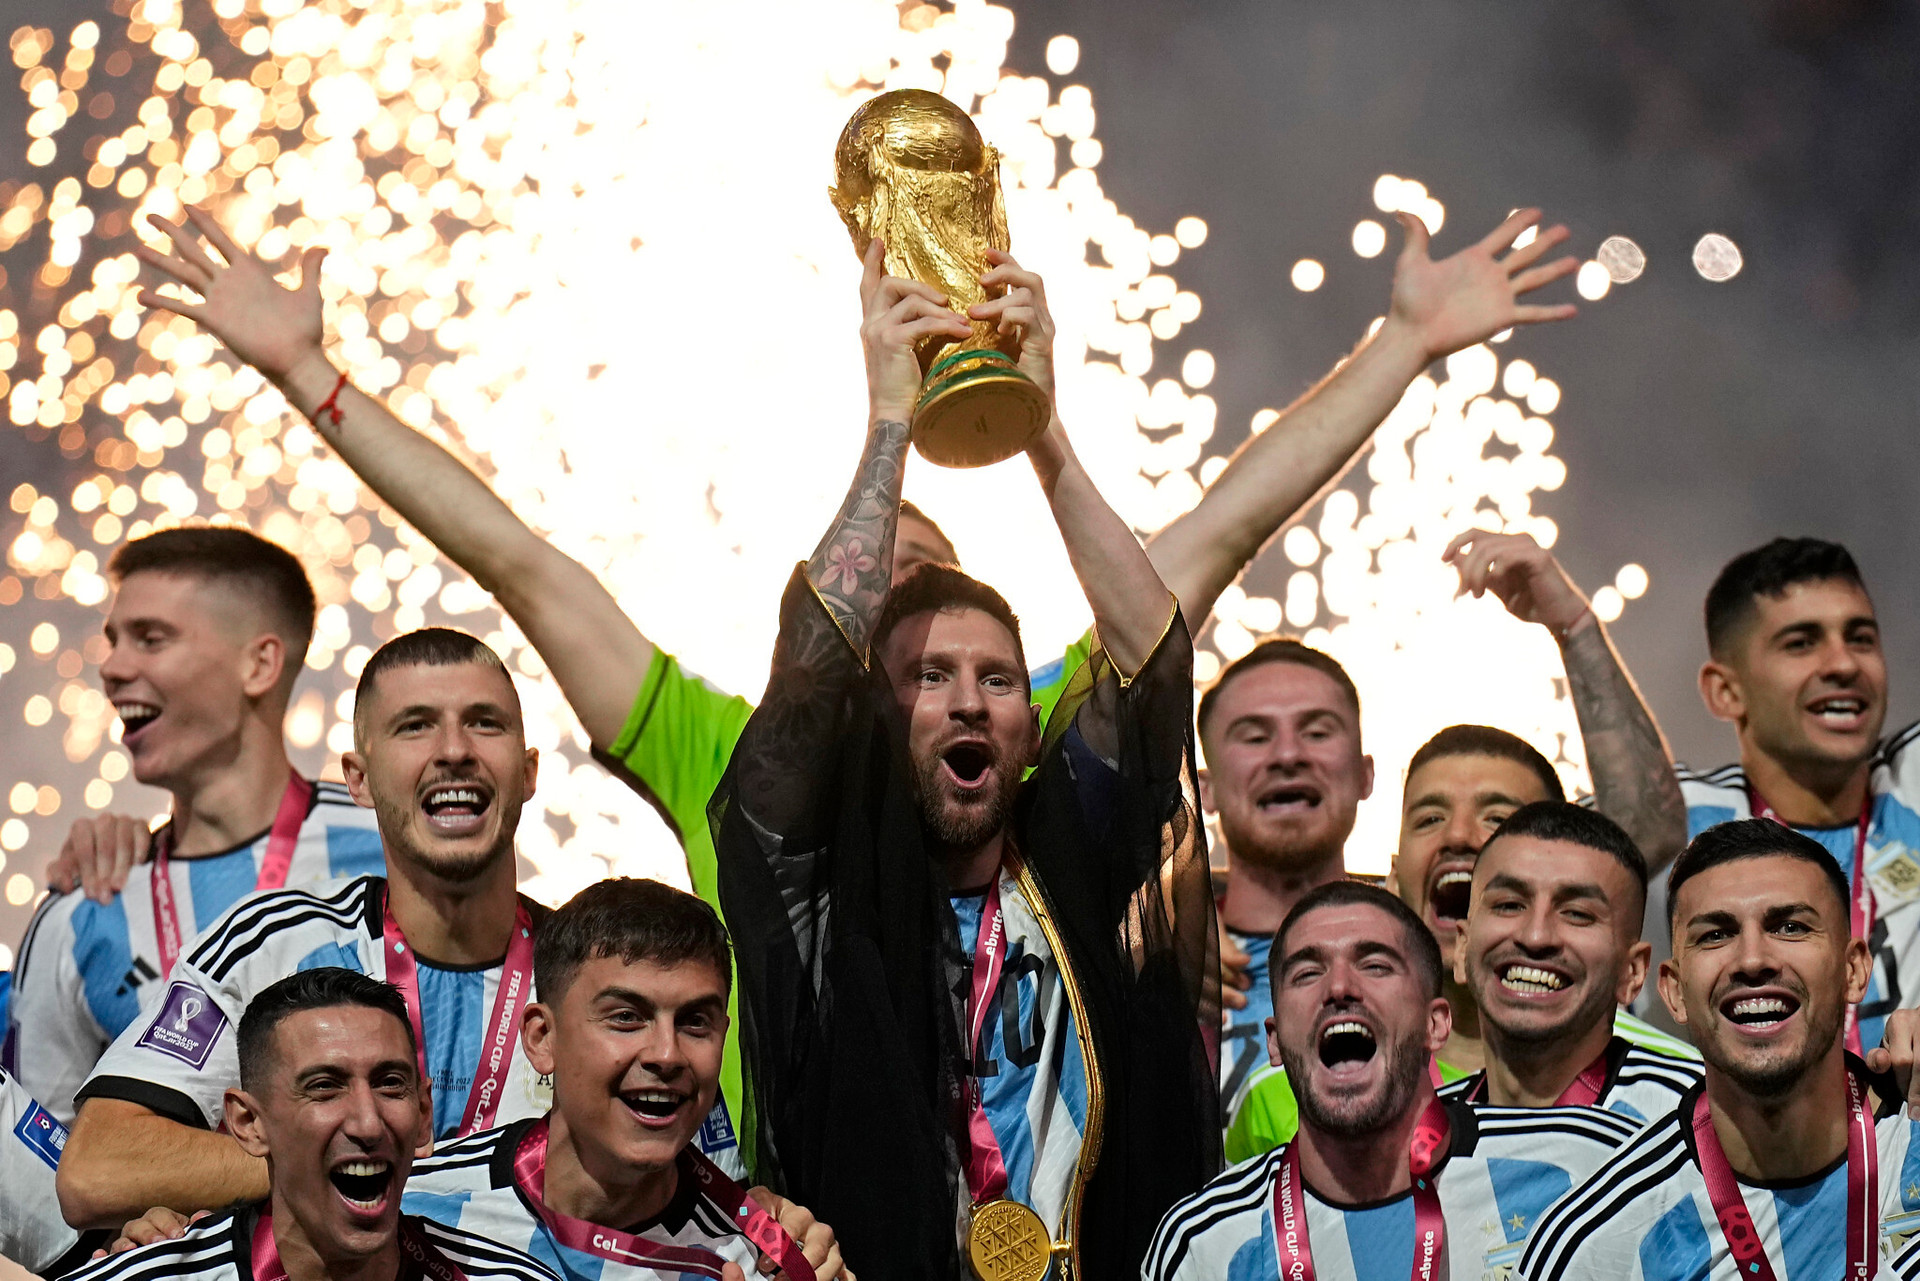 Cup vàng luôn là điều bất ngờ ở mỗi kì World Cup, và Messi cũng đã từng giành chiếc cúp vàng ấy. Hãy xem hình ảnh liên quan để tìm hiểu thêm về chân sút vĩ đại này.